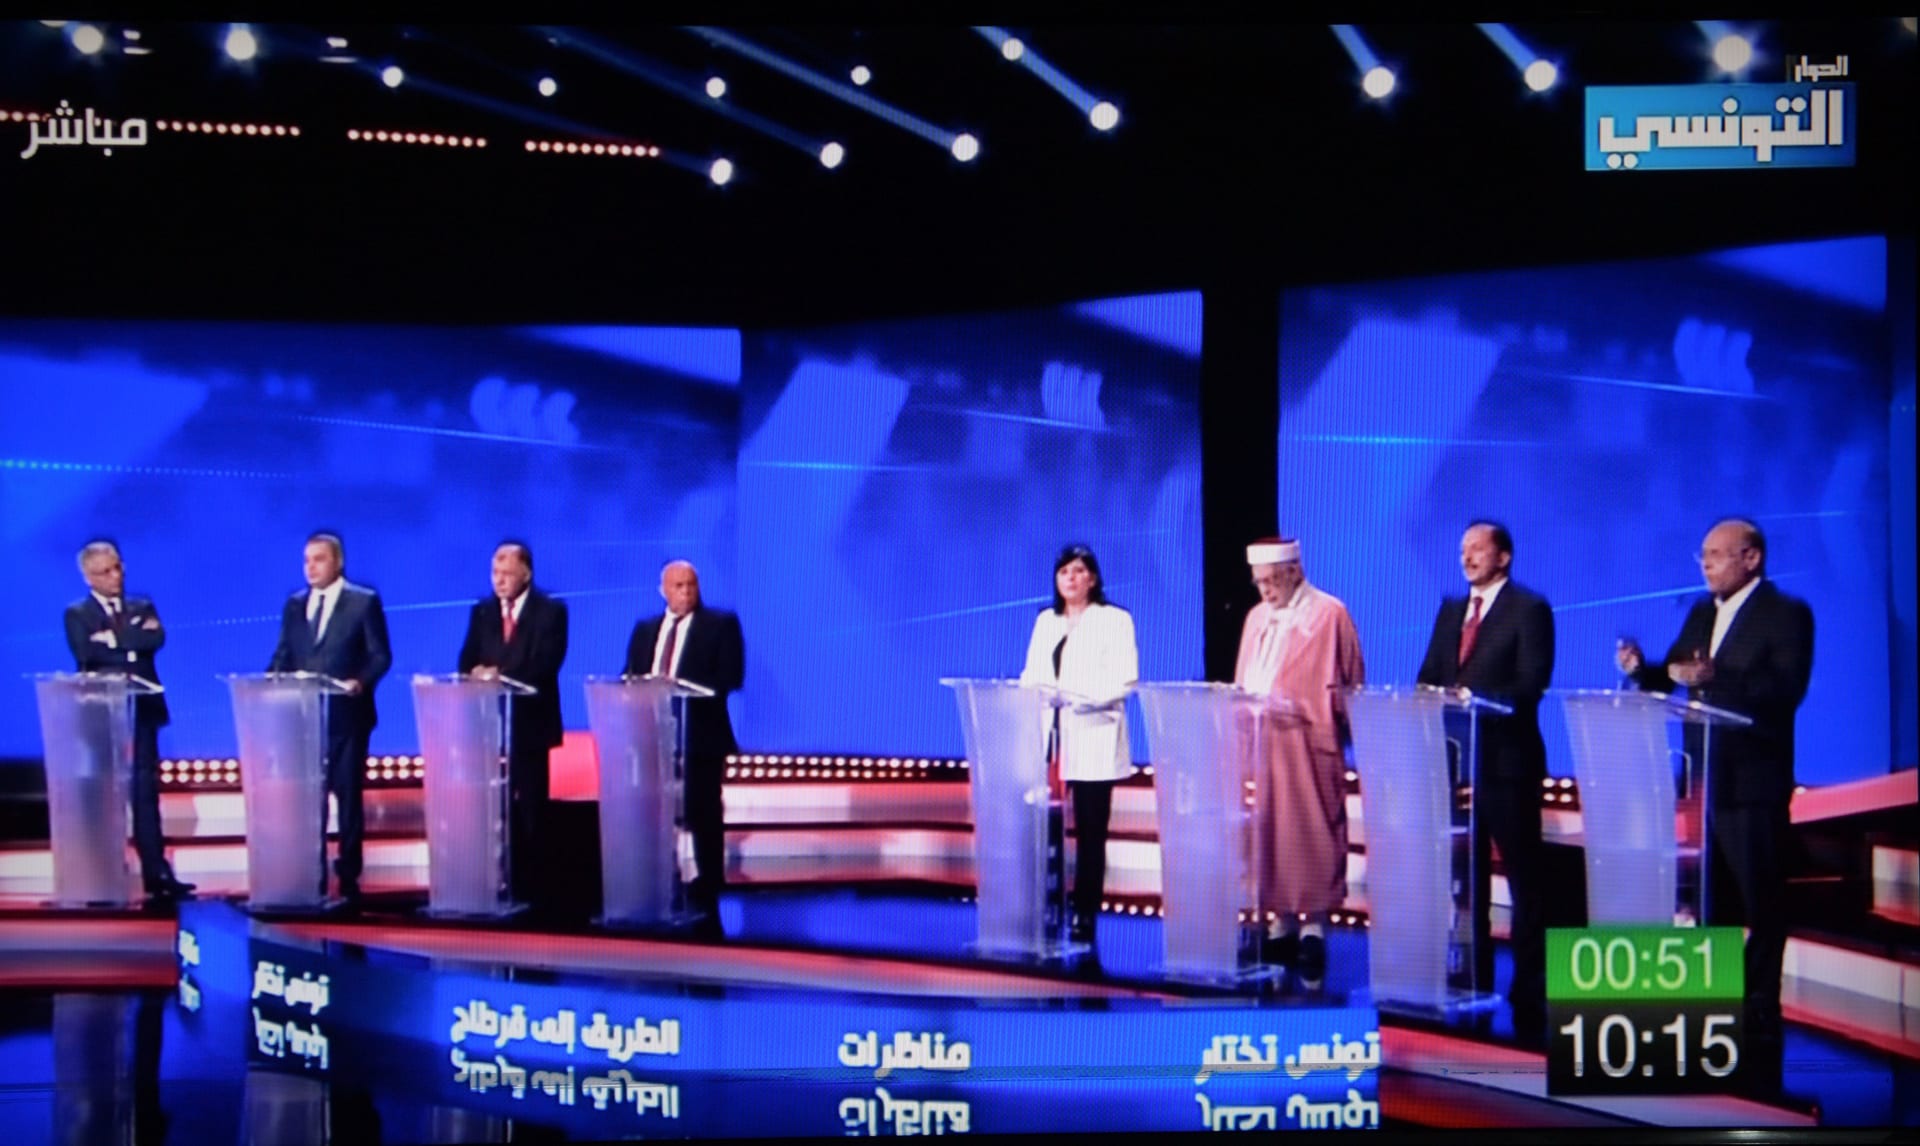 ليلة ساخنة مع أول مناظرة رئاسية في تاريخ تونس